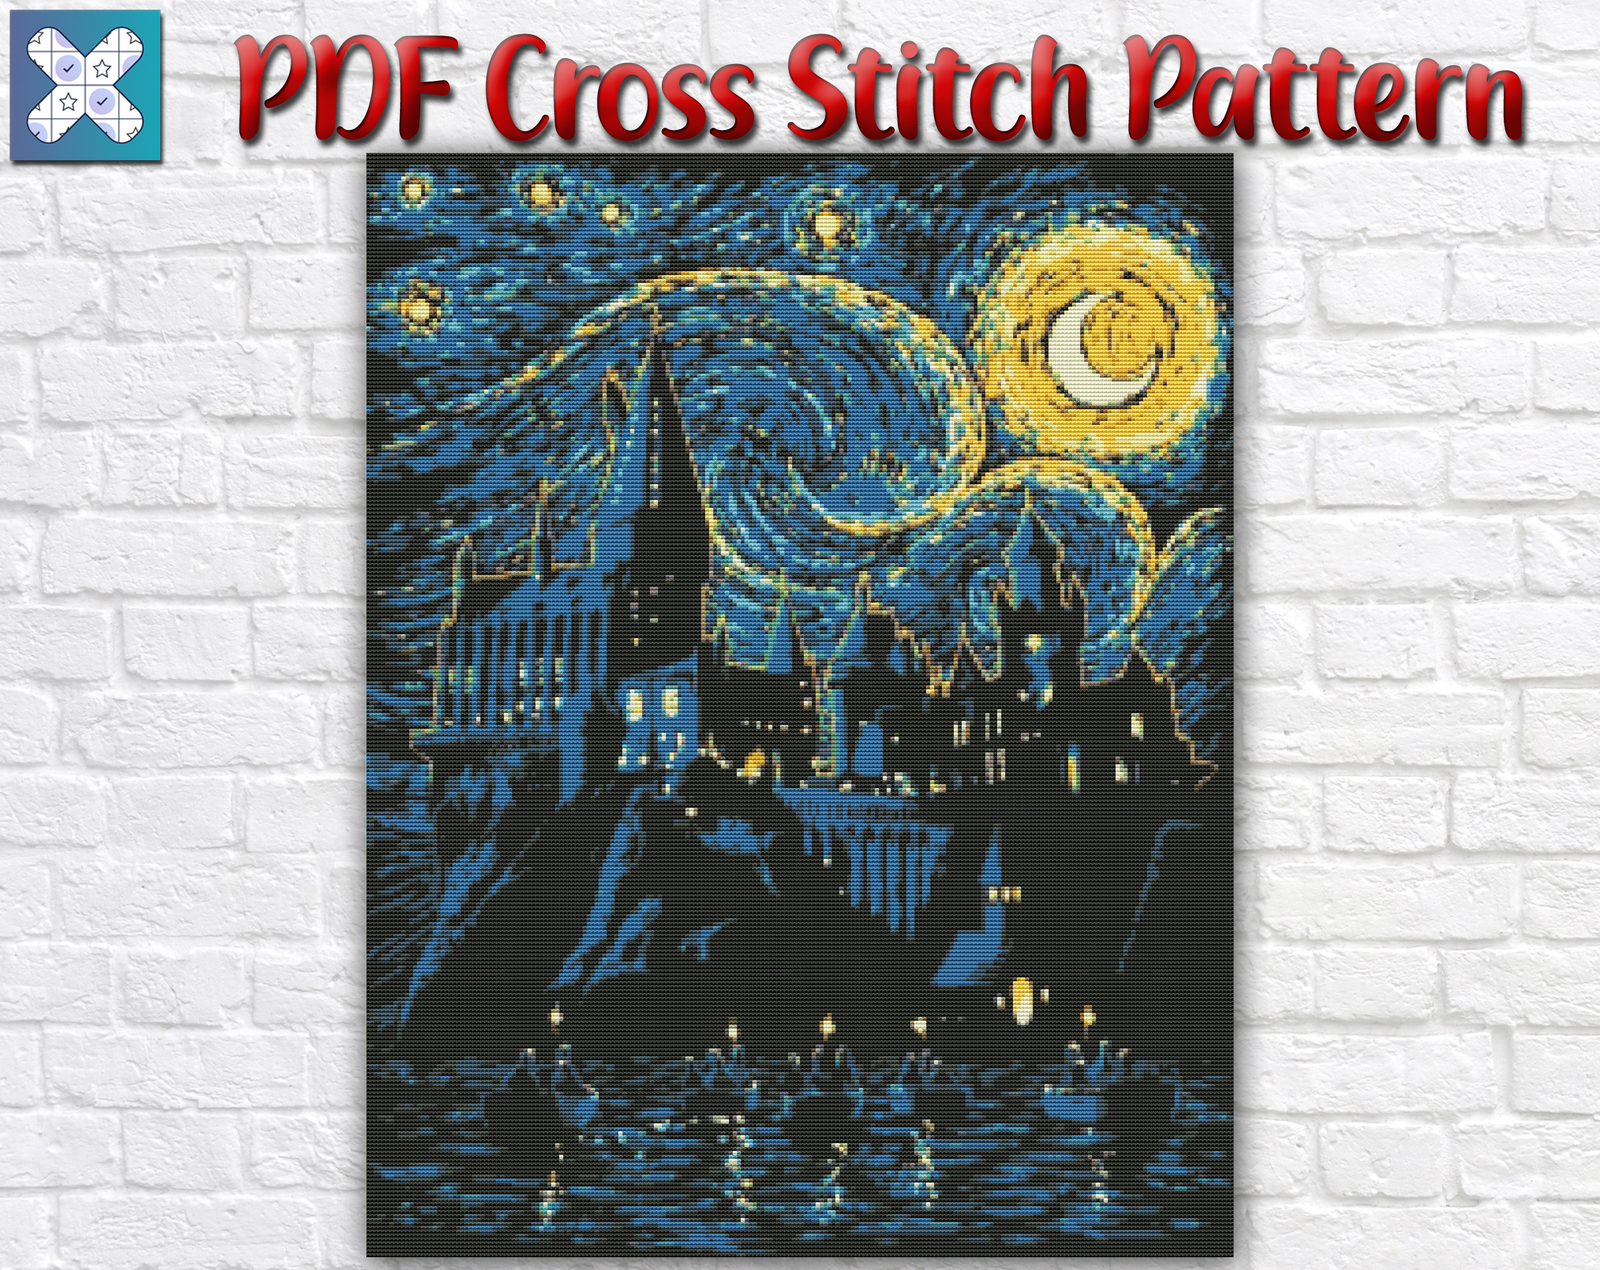 Harry Potter. 16 Free Small Cross Stitch Patterns PDF  Cross stitch harry  potter, Harry potter cross stitch pattern, Small cross stitch